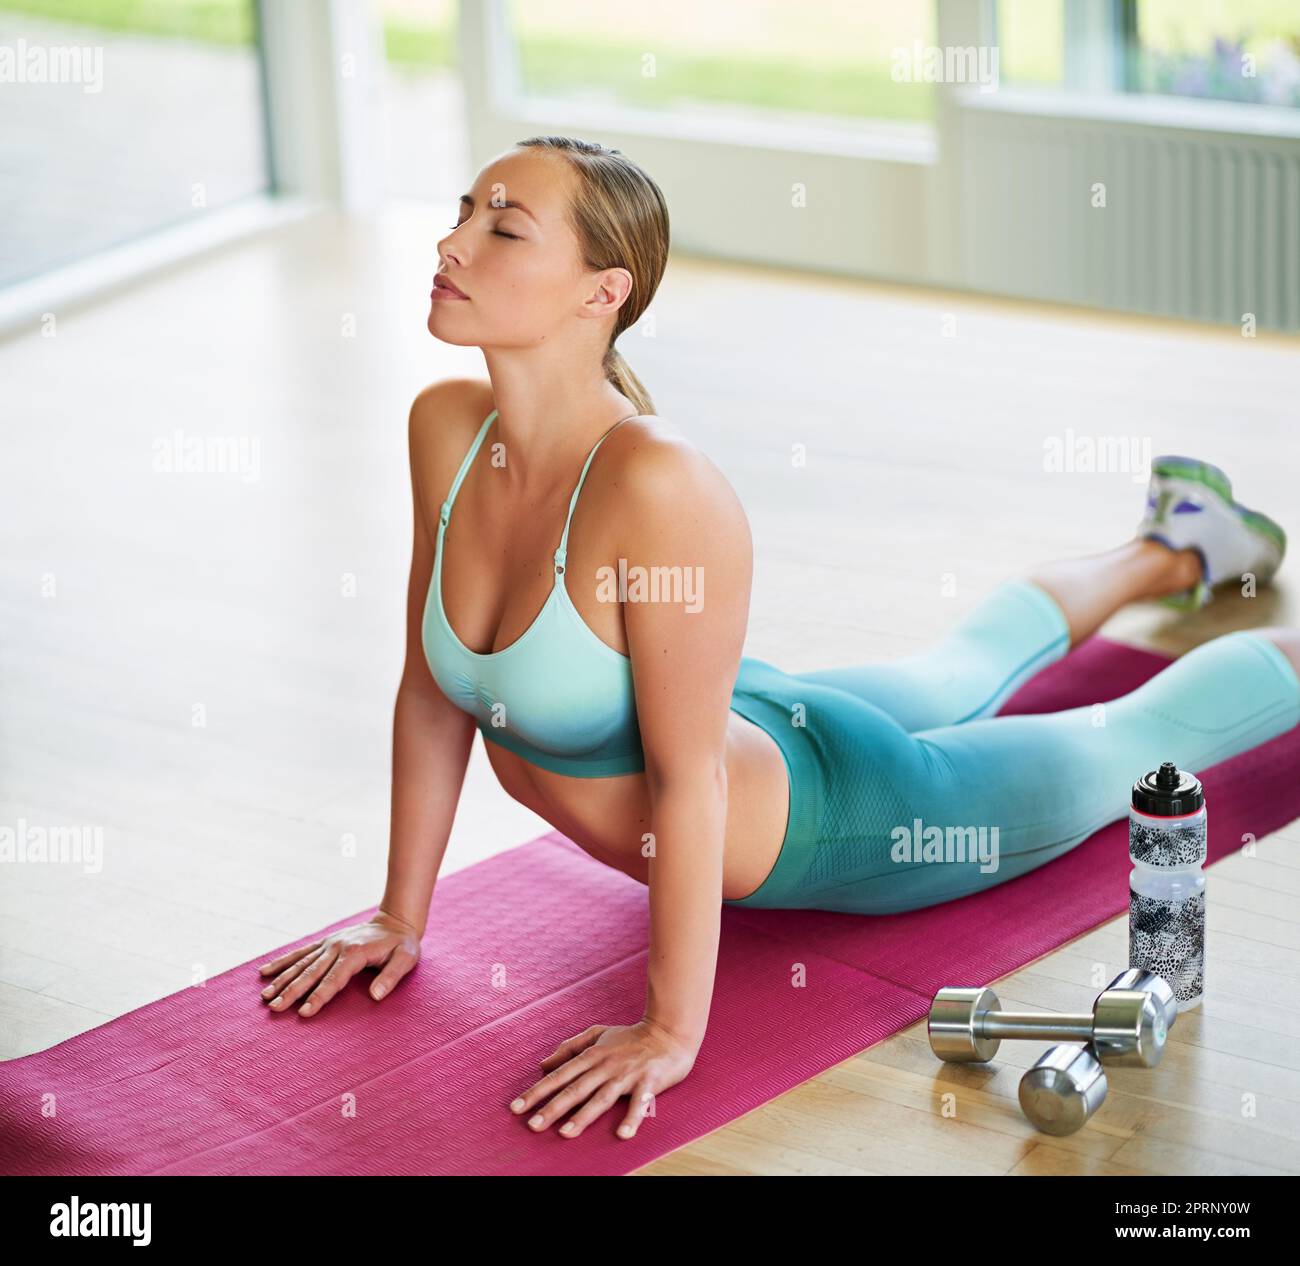 Le yoga est la partie la plus importante de sa journée. Une jeune femme attrayante faisant du yoga à la maison. Banque D'Images